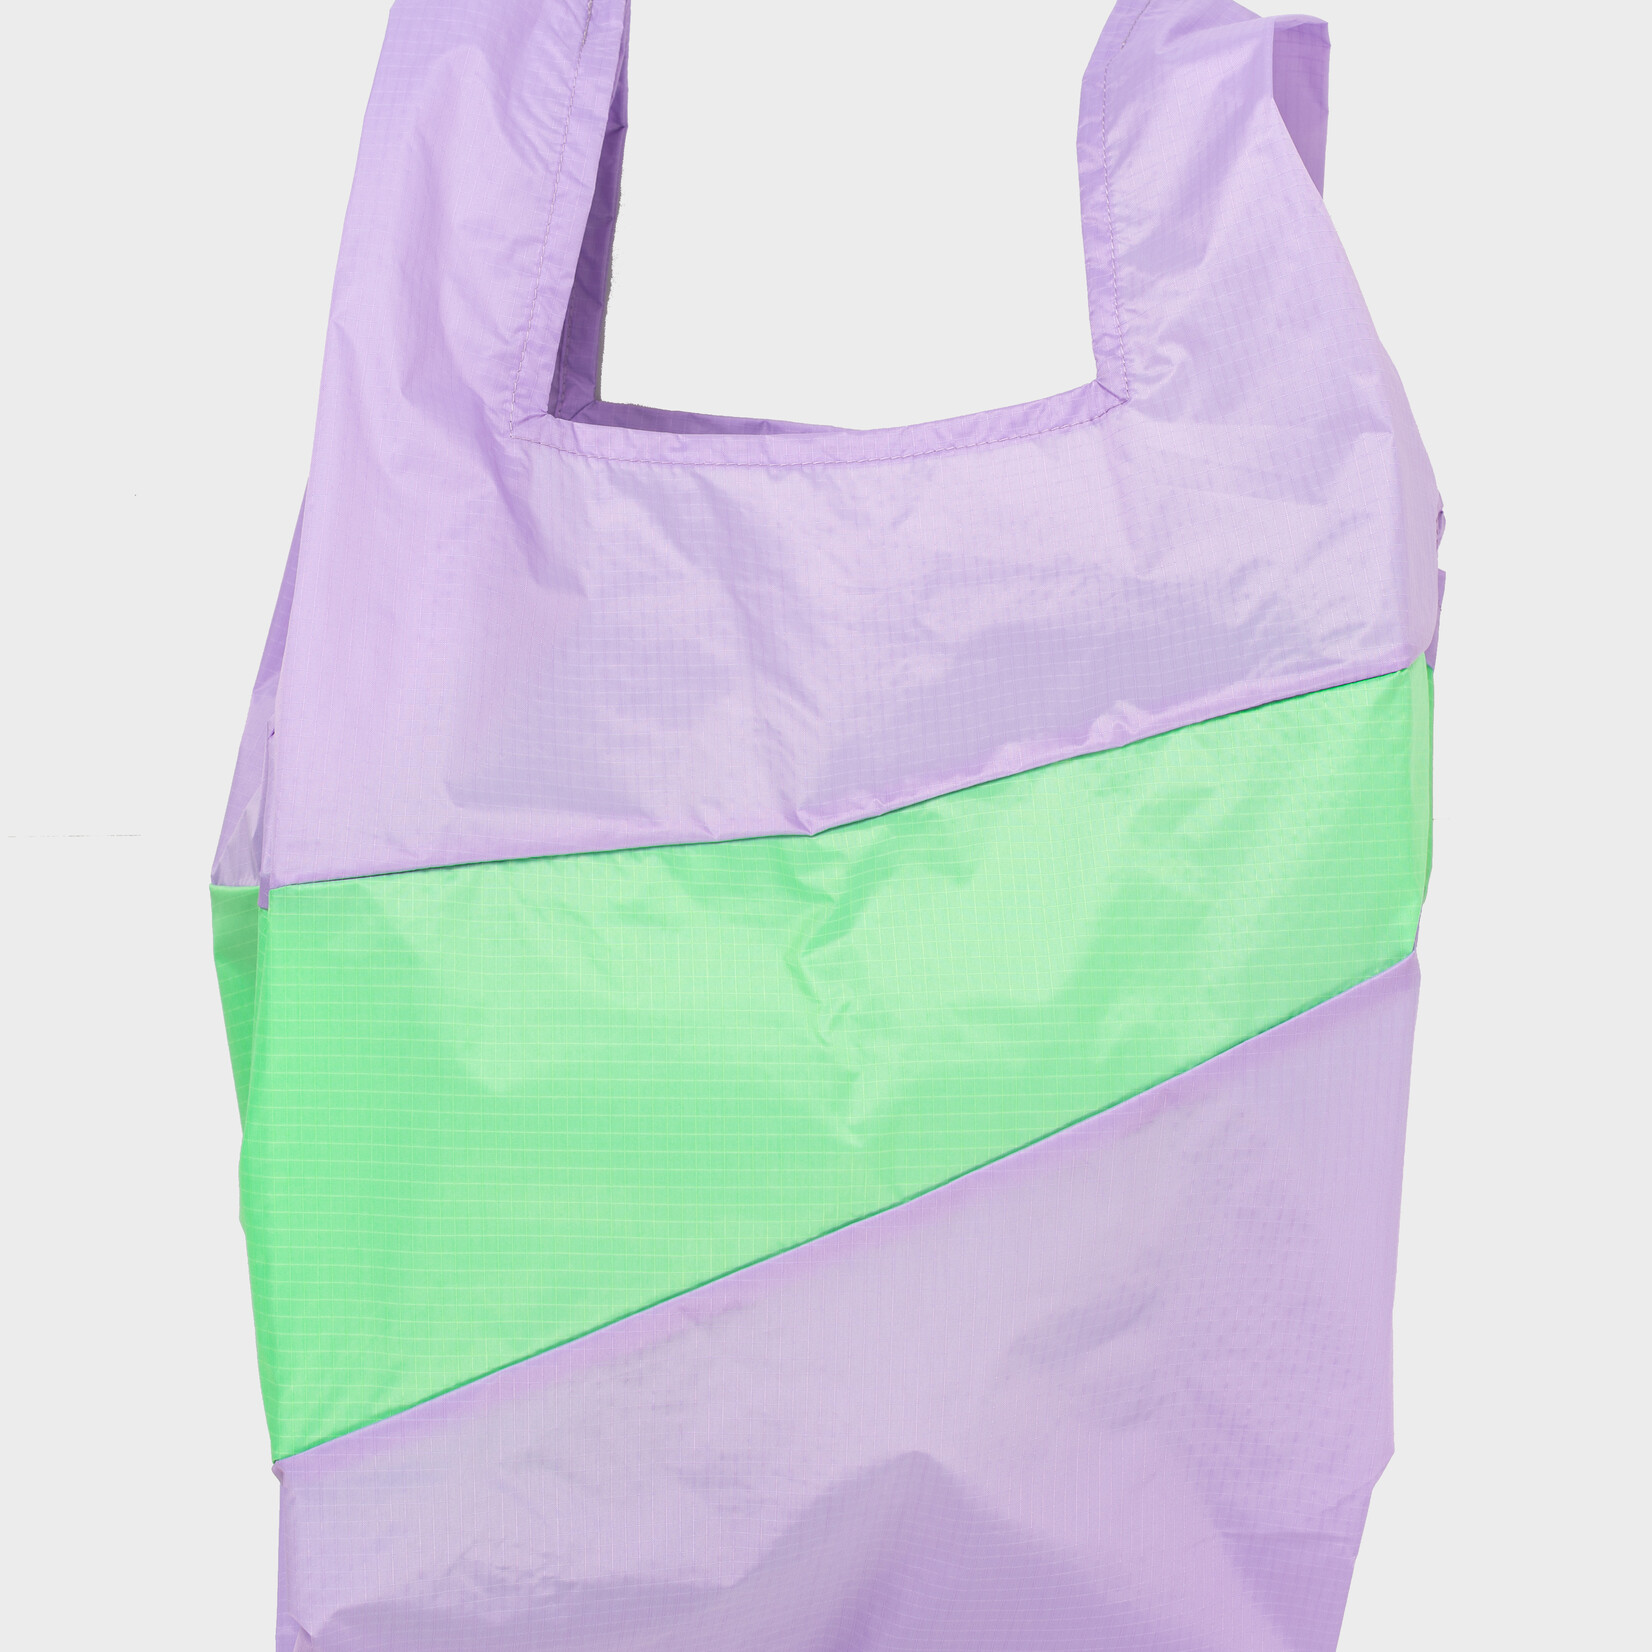 Susan Bijl Susan Bijl - Shopping Bag Idea & Error (PROCESS)